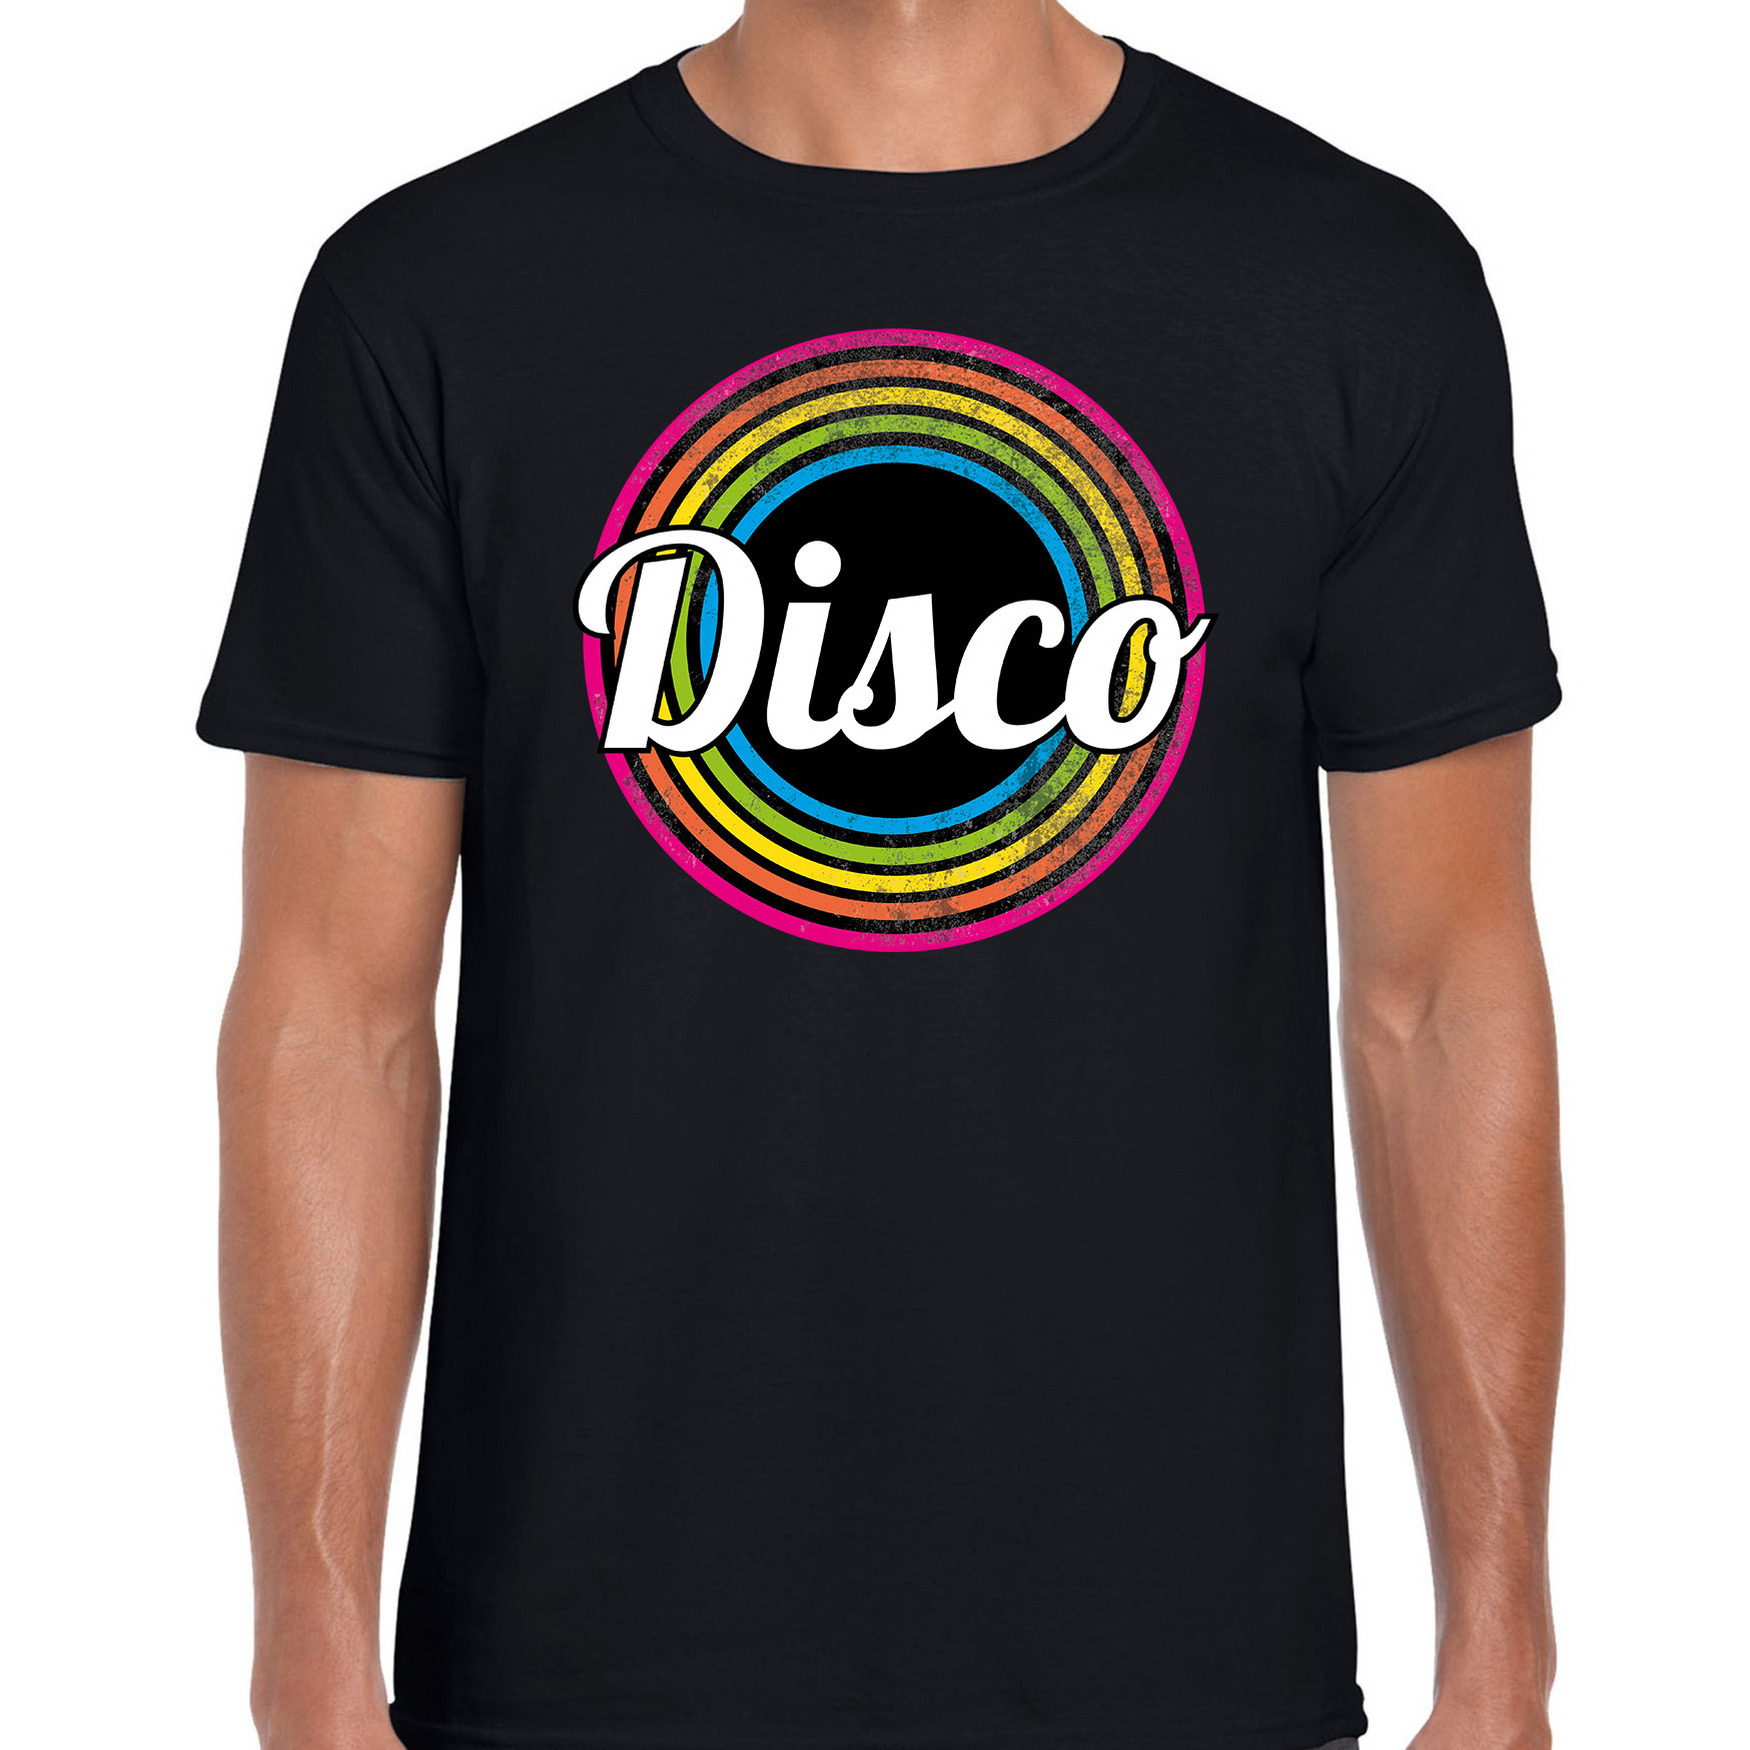 Disco verkleed t-shirt zwart voor heren - 70s, 80s party verkleed outfit